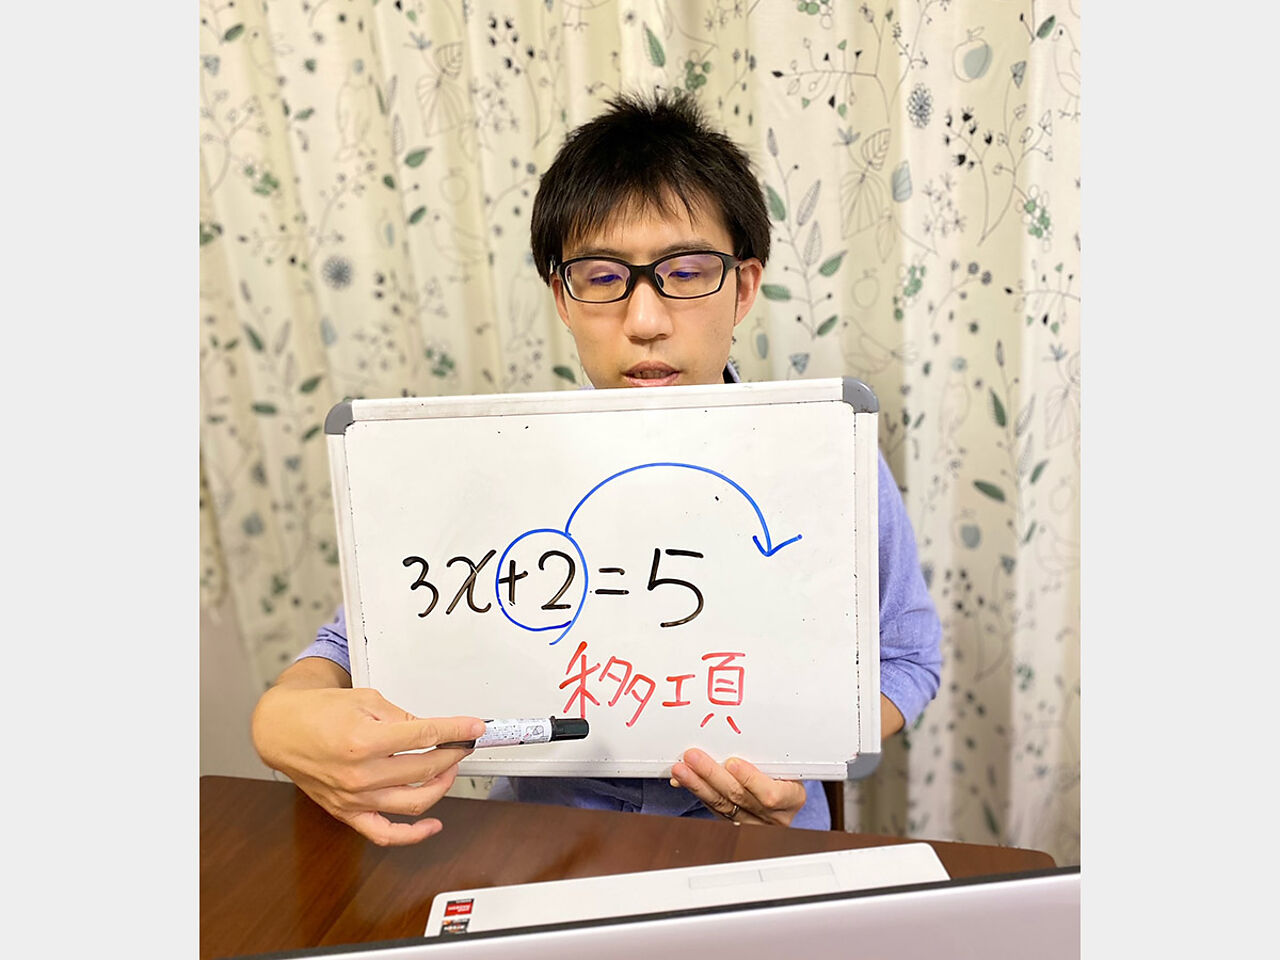 木本さんがホワイトボードで指導している画像